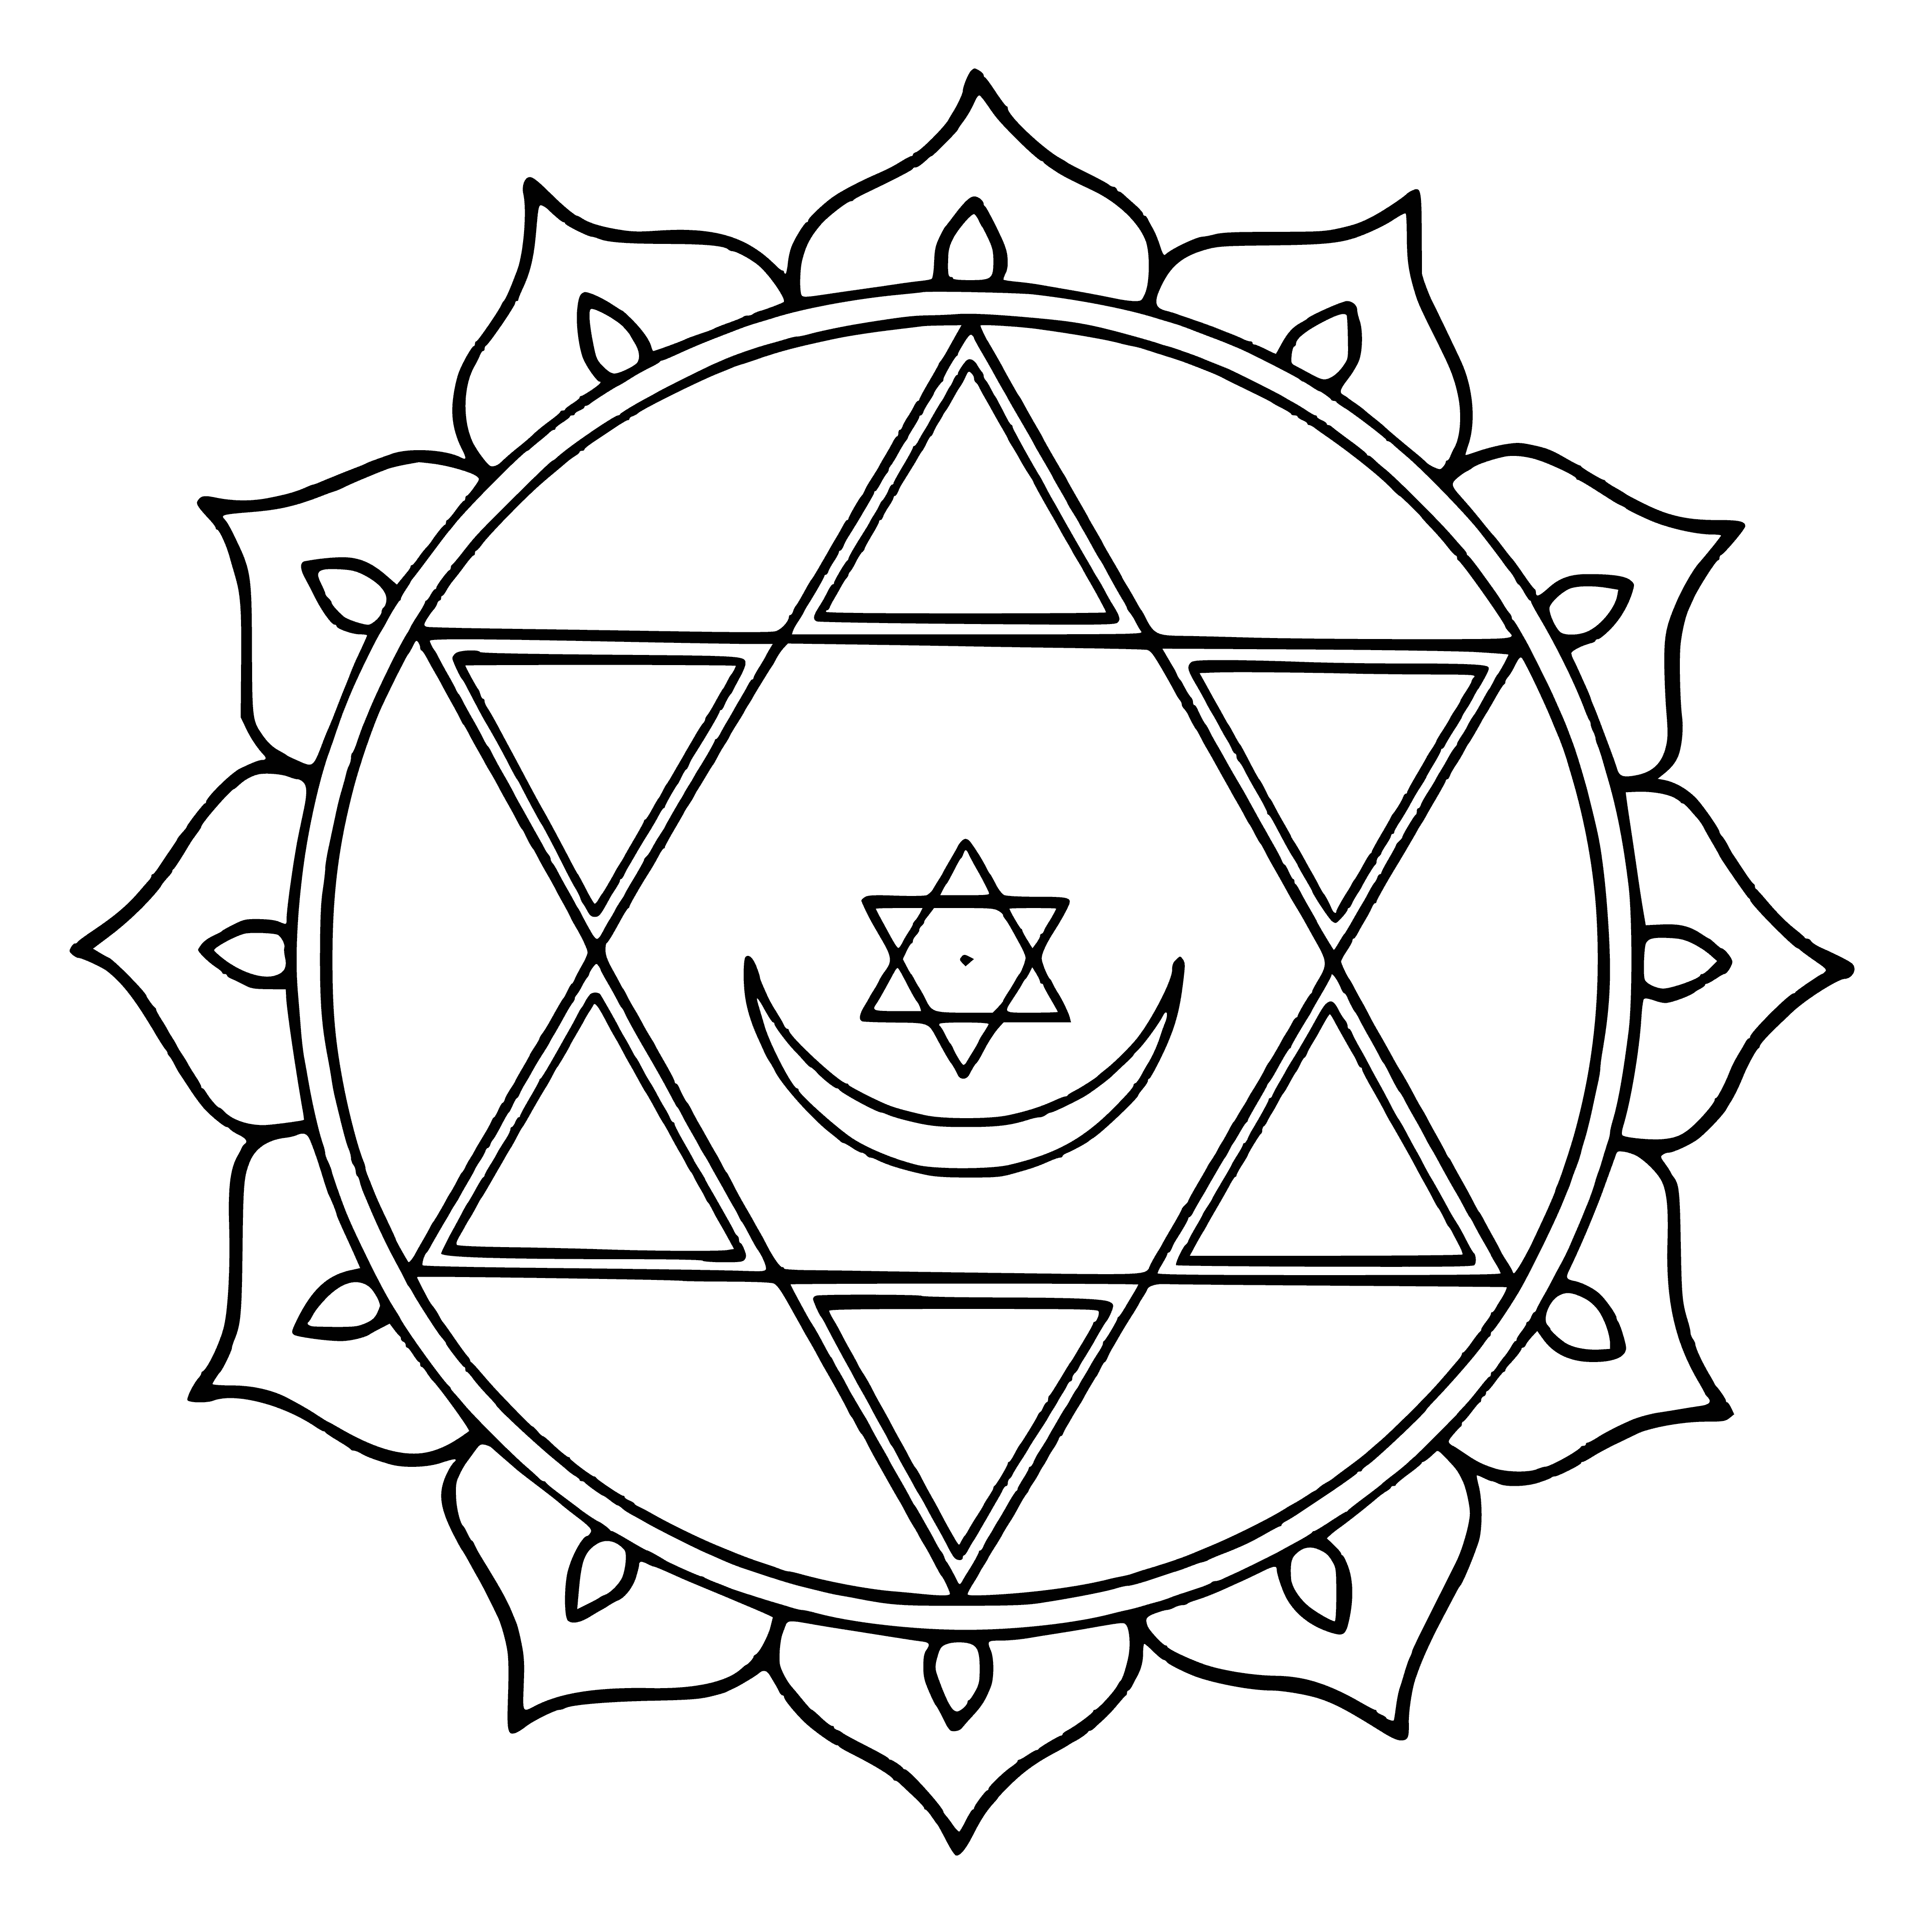 Mandala z heksagramem kolorowanka